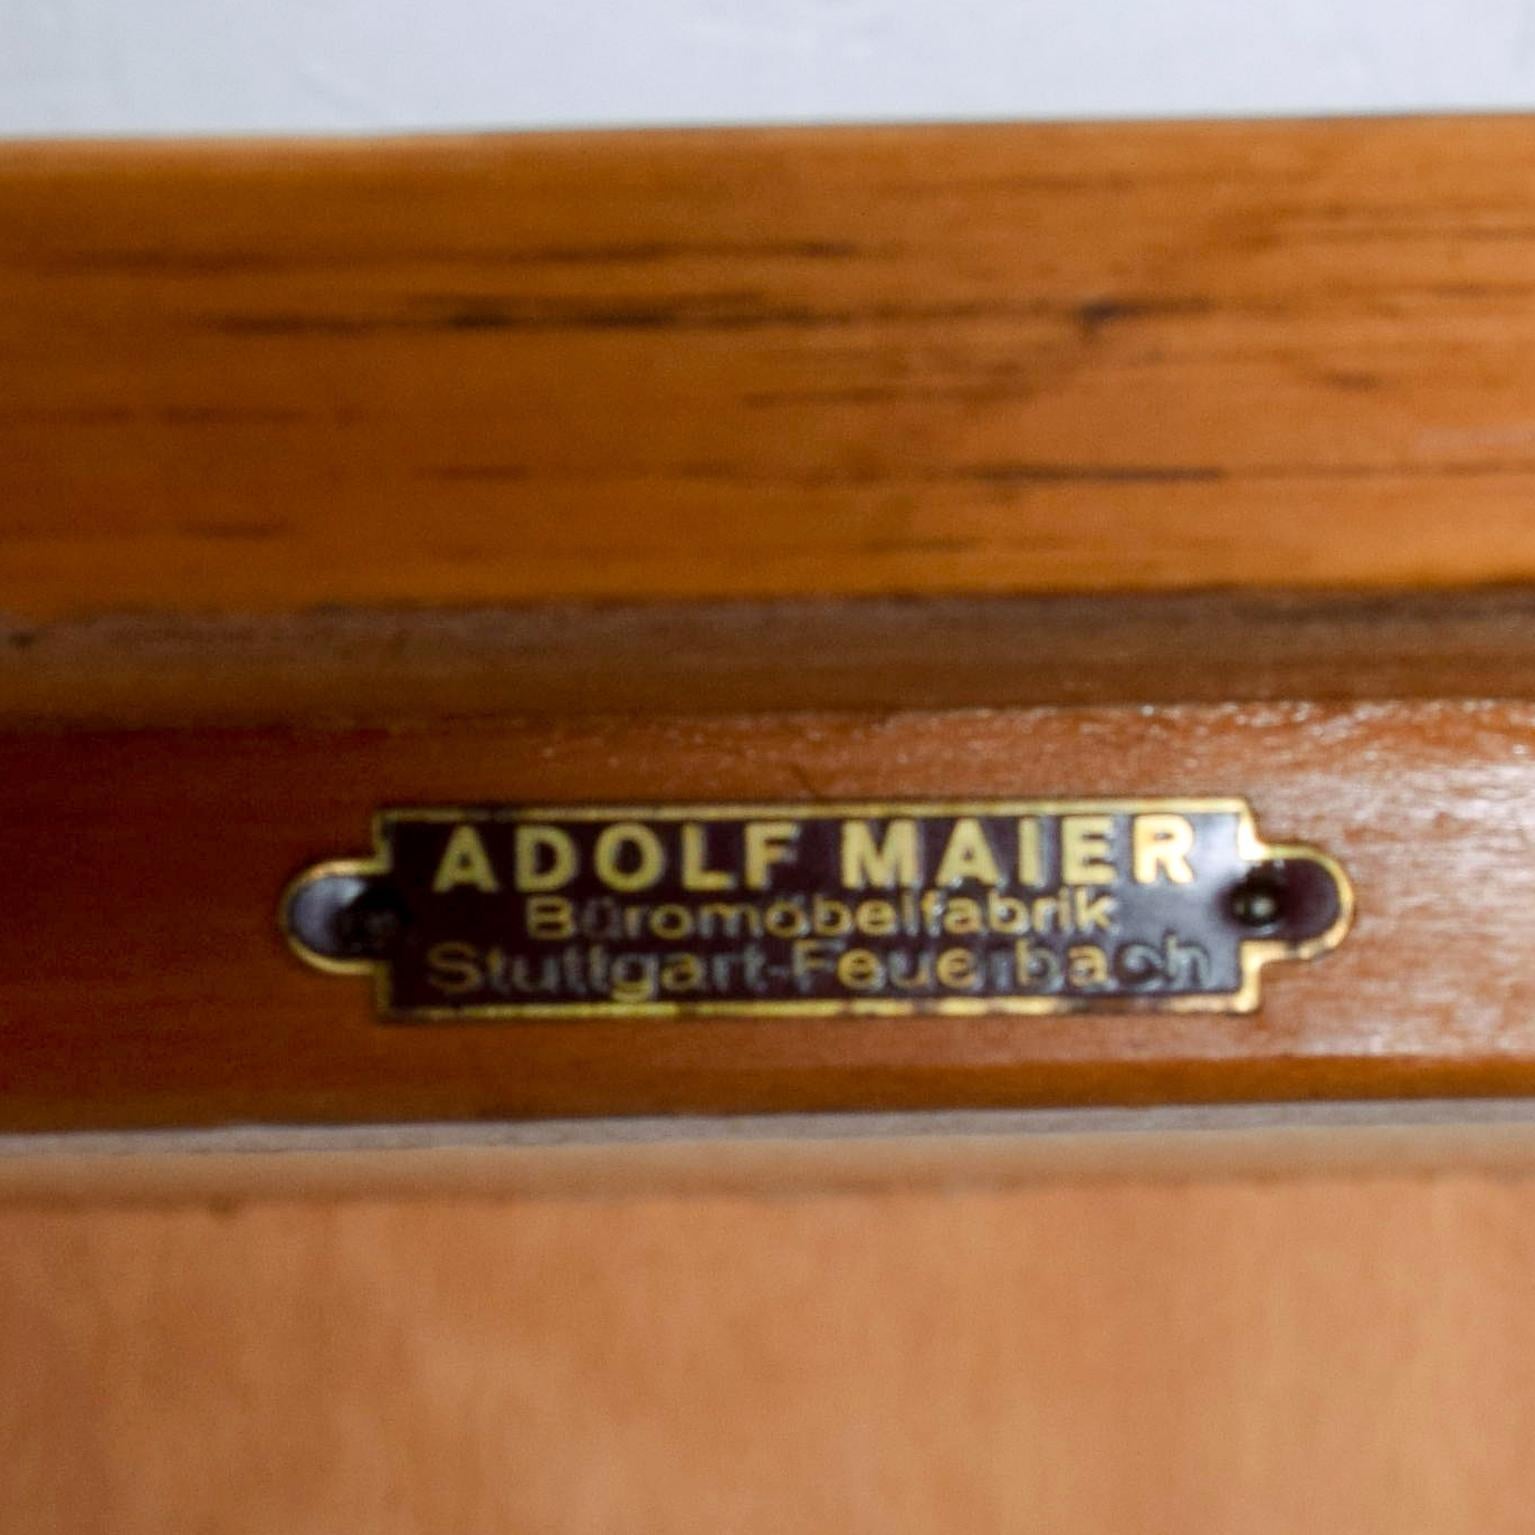 Adolf Maier Blonde Bauhaus Desk Locking Tambour Doors, Germany 1